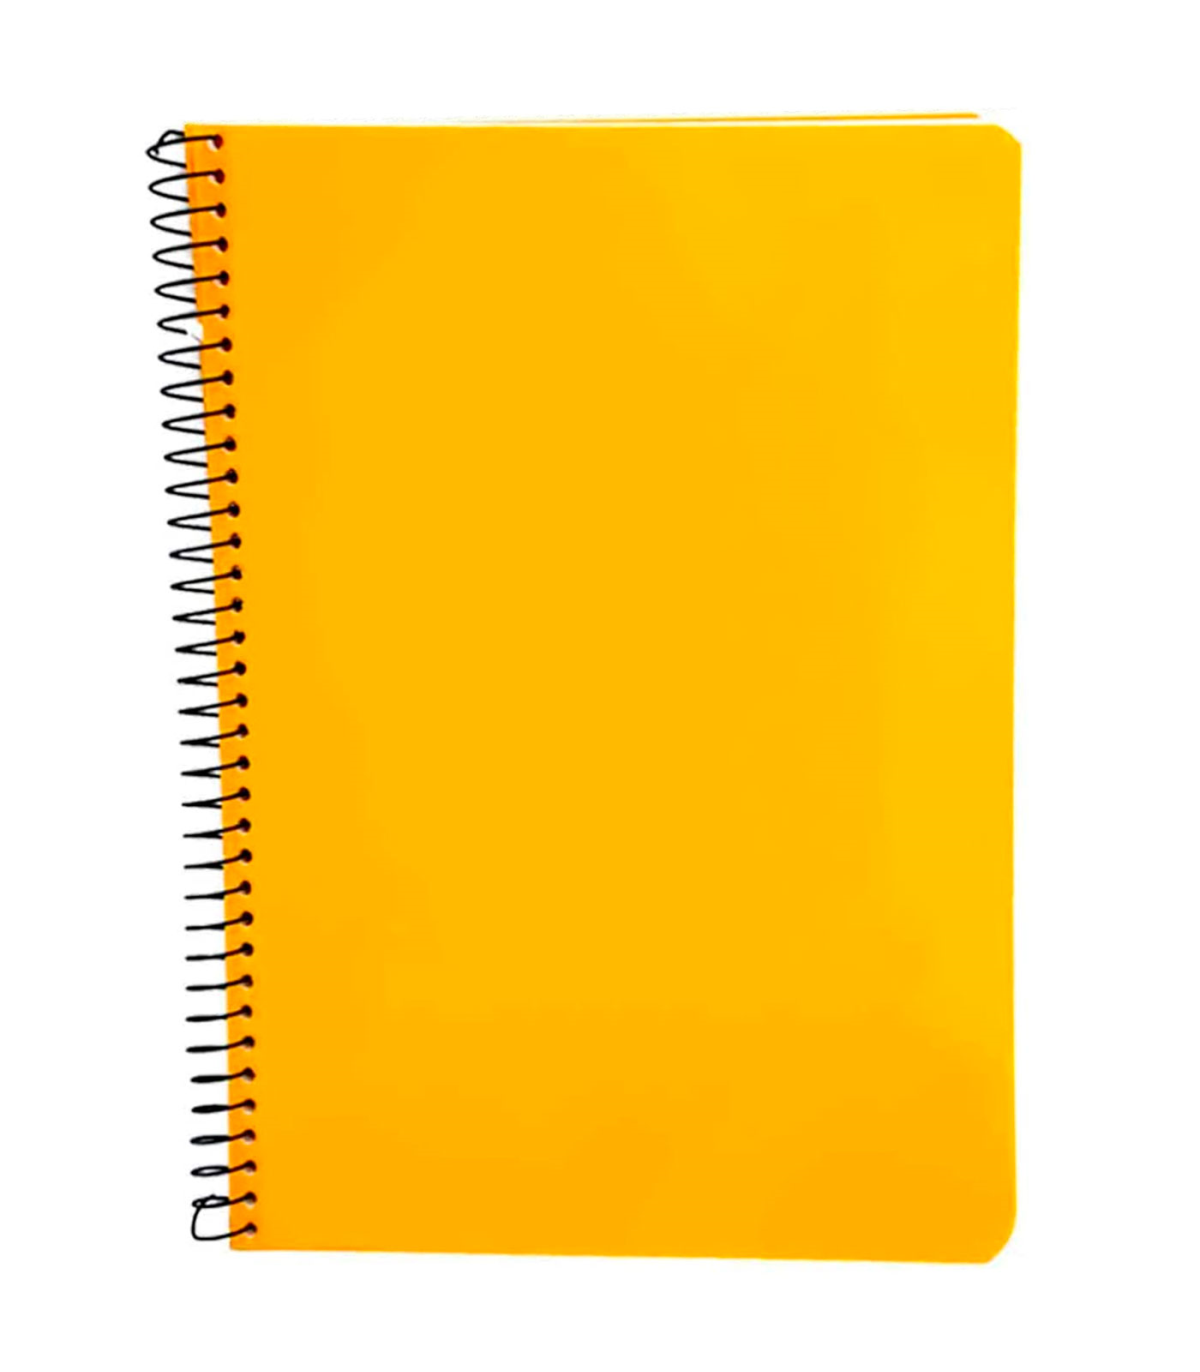 Tradineur - Cuaderno A4 con hojas en blanco, lisas, encuadernación